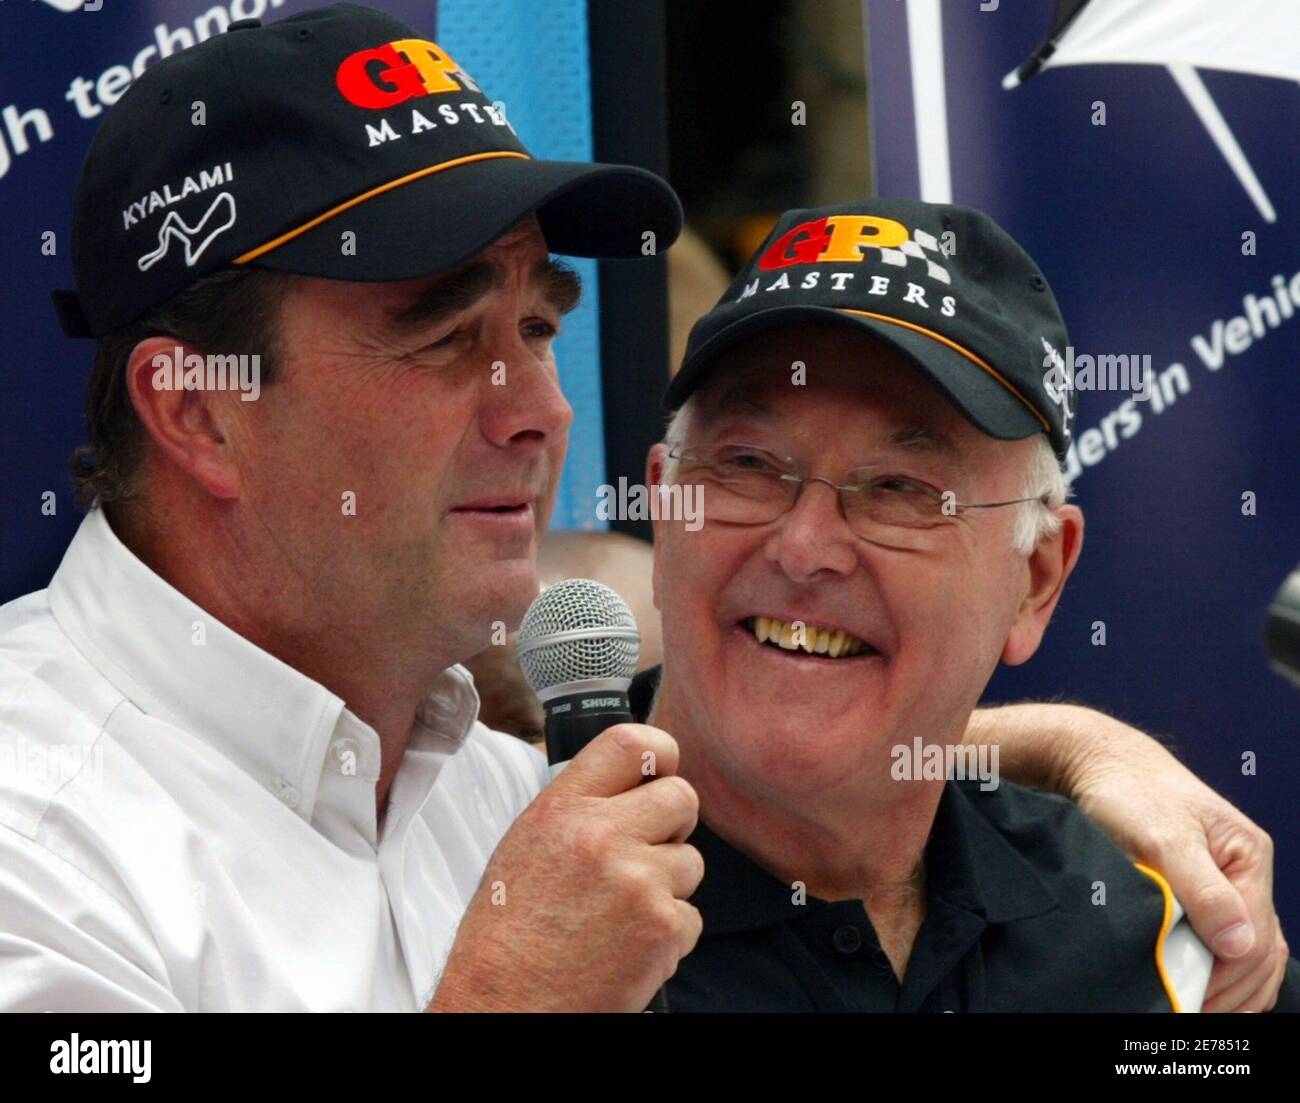 Der britische Nigel Mansell (L) und der ehemalige Formel-1-Kommentator Murray Walker nehmen an einer Pressekonferenz zur South African Grand Prix Master-Serie in Johannesburg am 10. November 2005 Teil. REUTERS/Juda Ngwenya Stockfoto